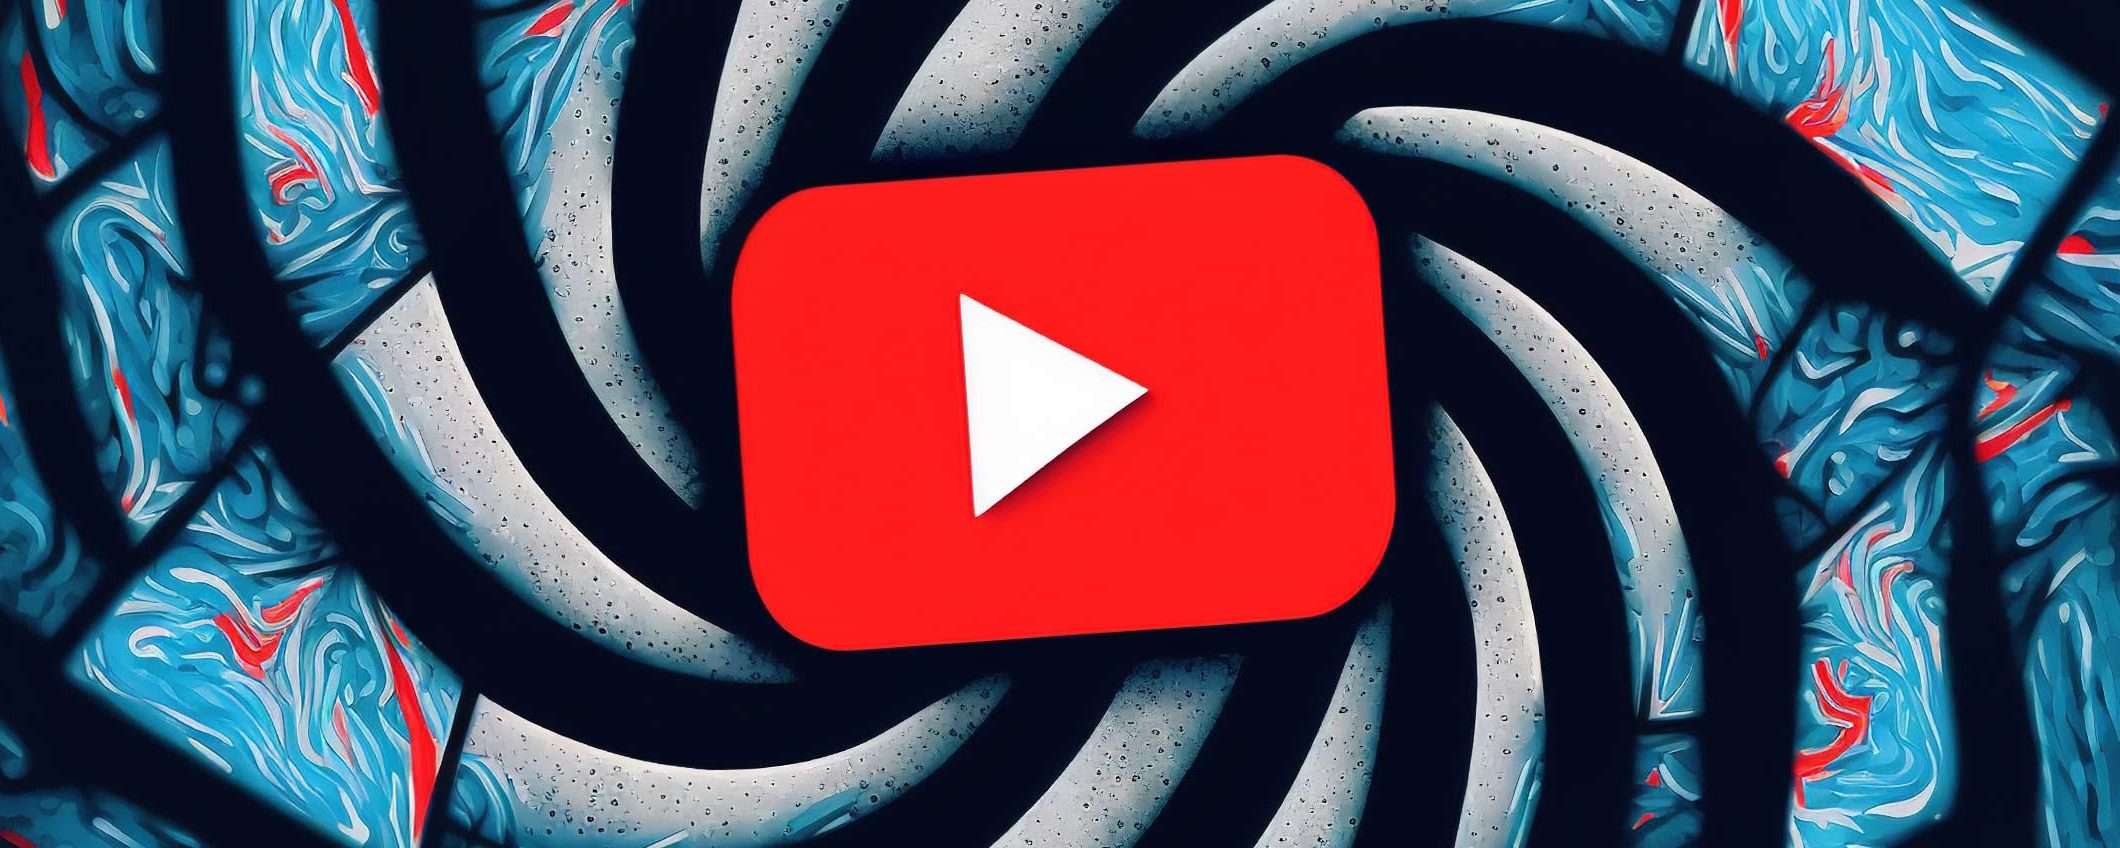 YouTube Premium: qualità video migliore su Android